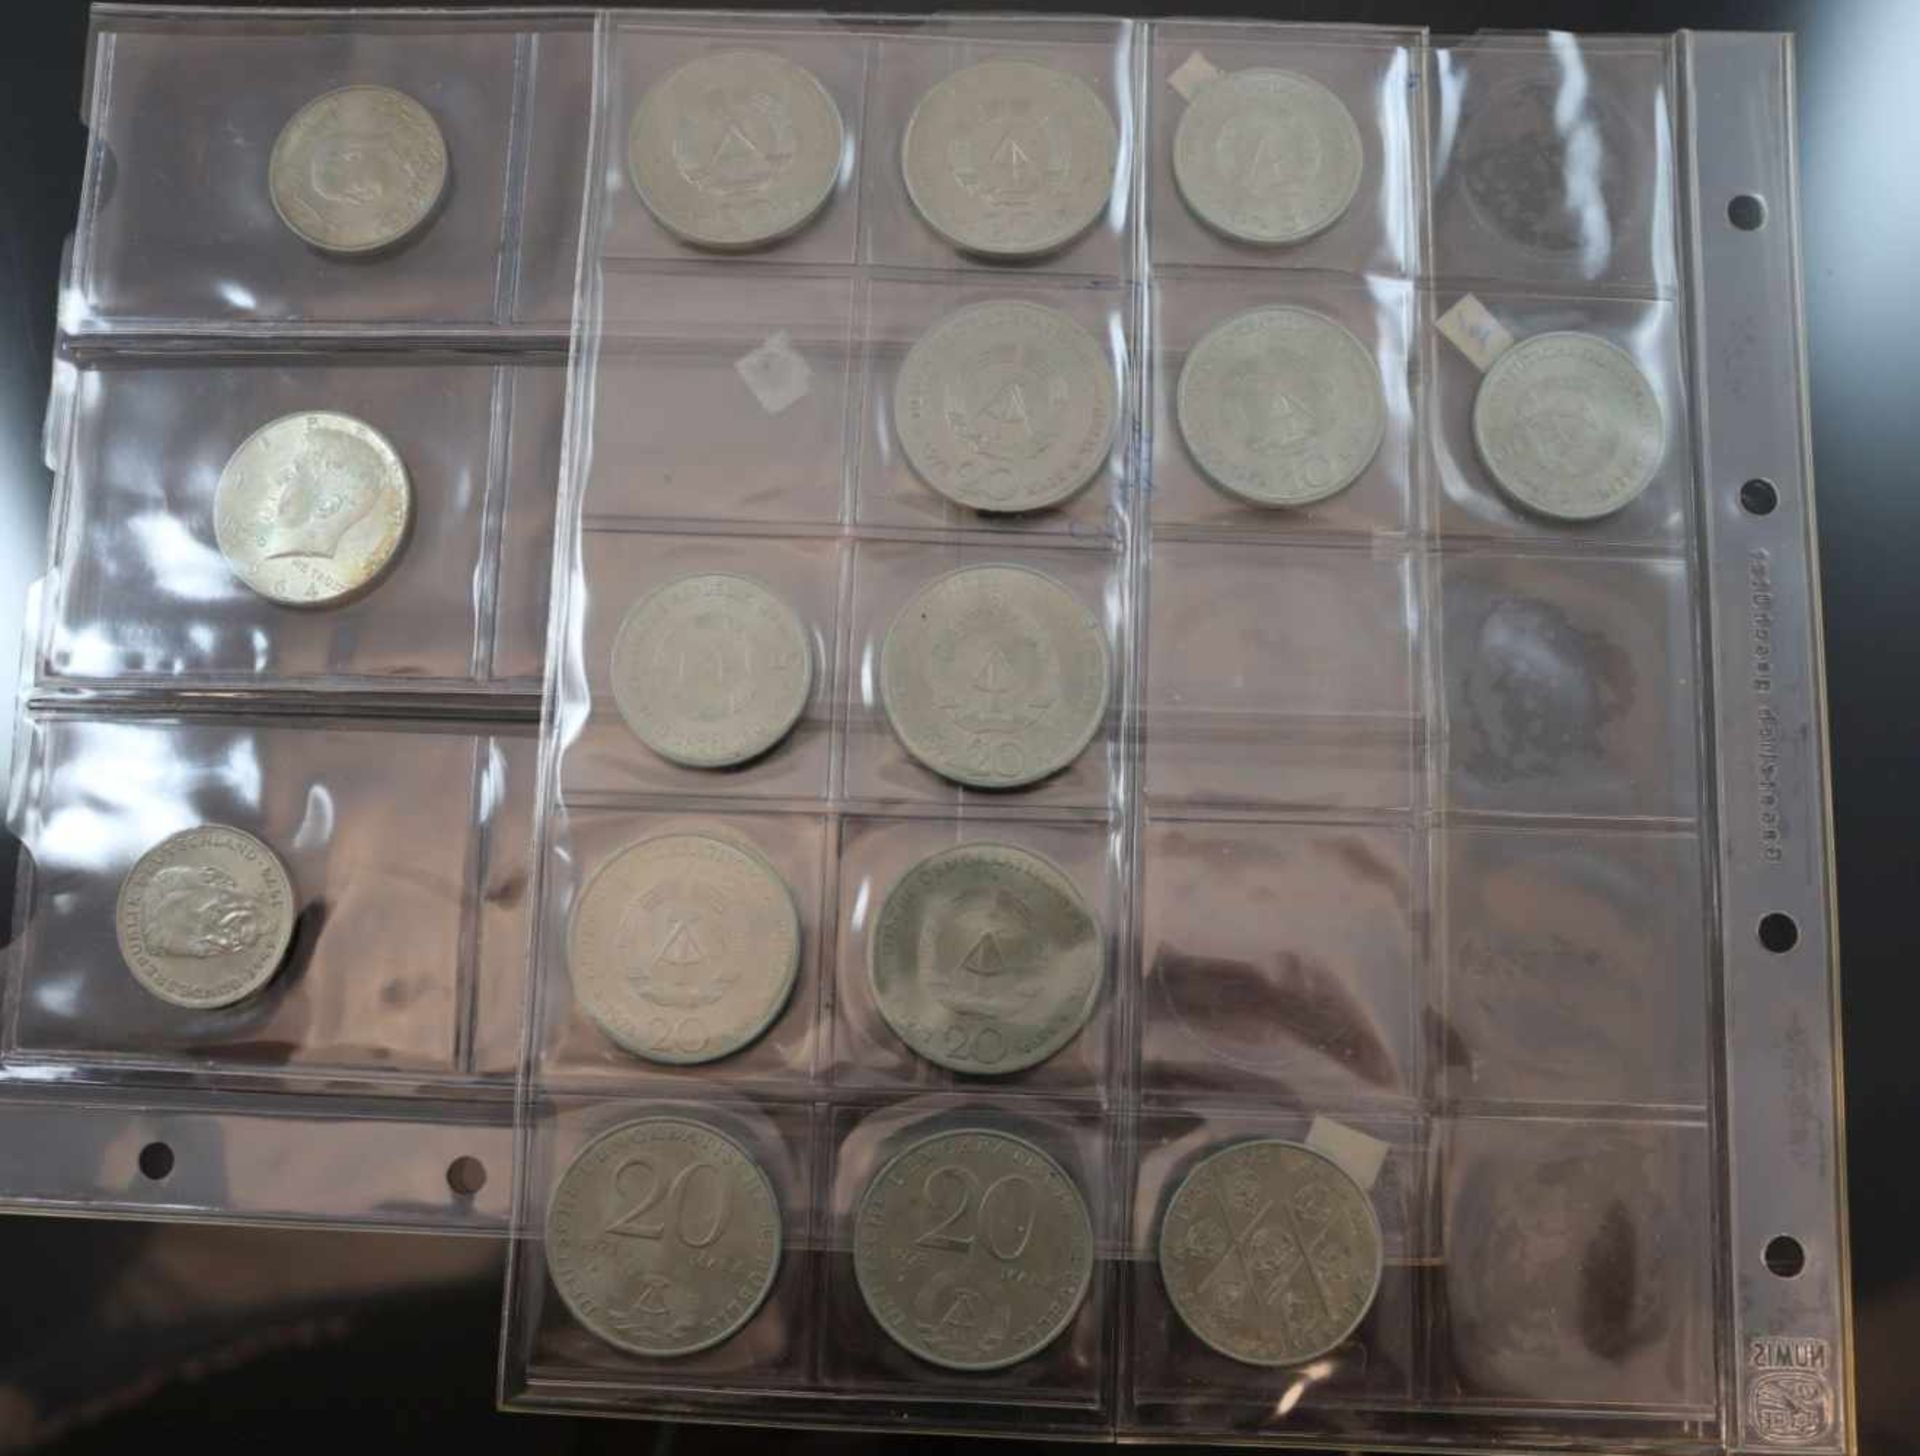 Münz-Konvolut17 Münzen diverser Währungen und Jahrgänge.- - -25.00 % buyer's premium on the hammer - Bild 2 aus 2